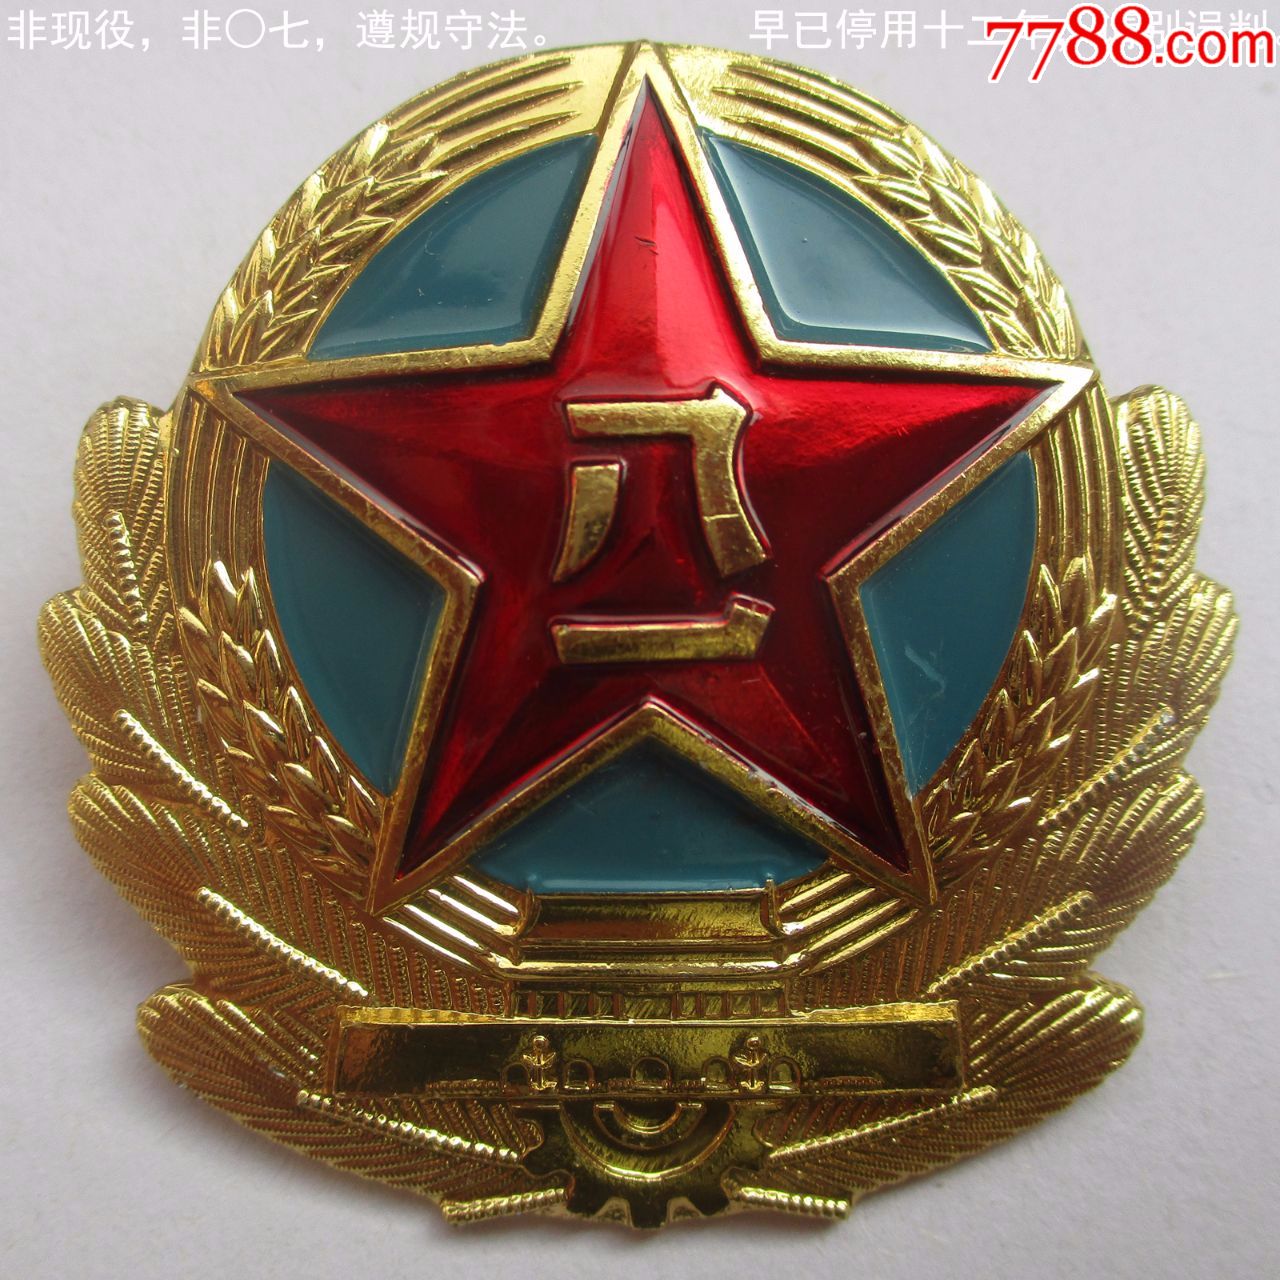 退役★陆87★大帽徽(一枚)1988年列装,2007年废止的老式版本